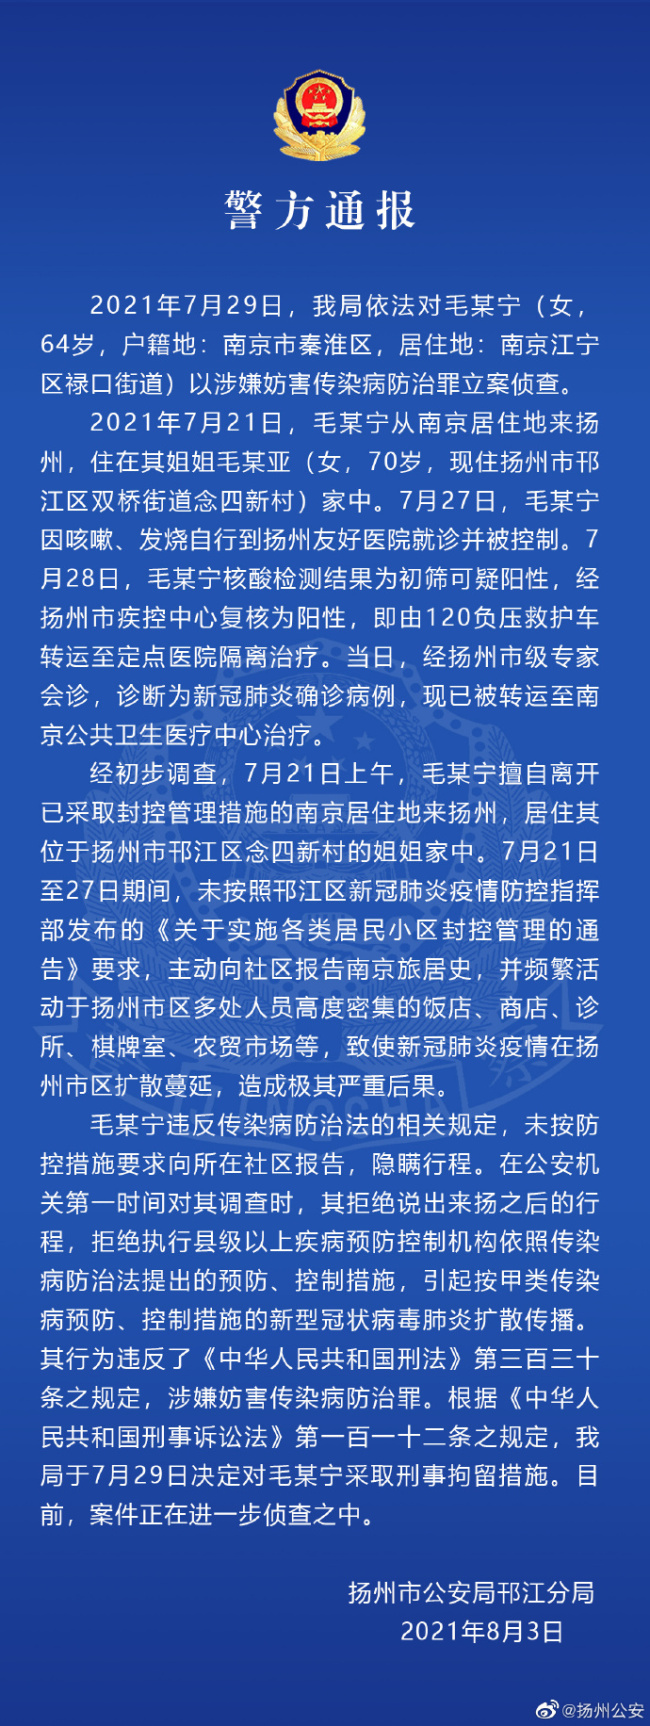 64岁女子隐瞒南京行程到扬州 致疫情扩散被立案